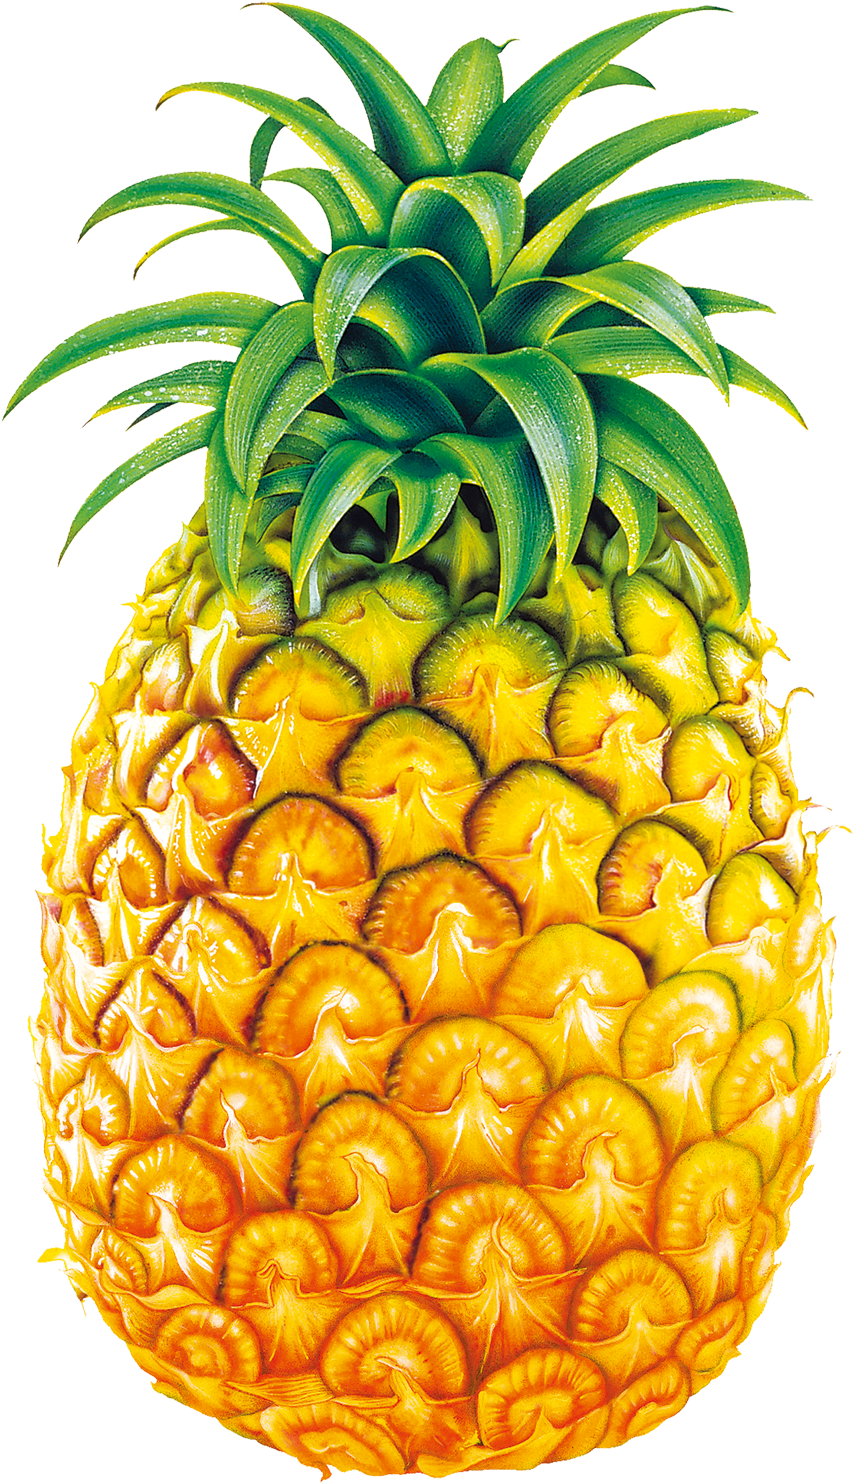 Pineapple Juice Fruit Bromelain Clip Art - Legend Of Pineapple Short Story (1344x1860)